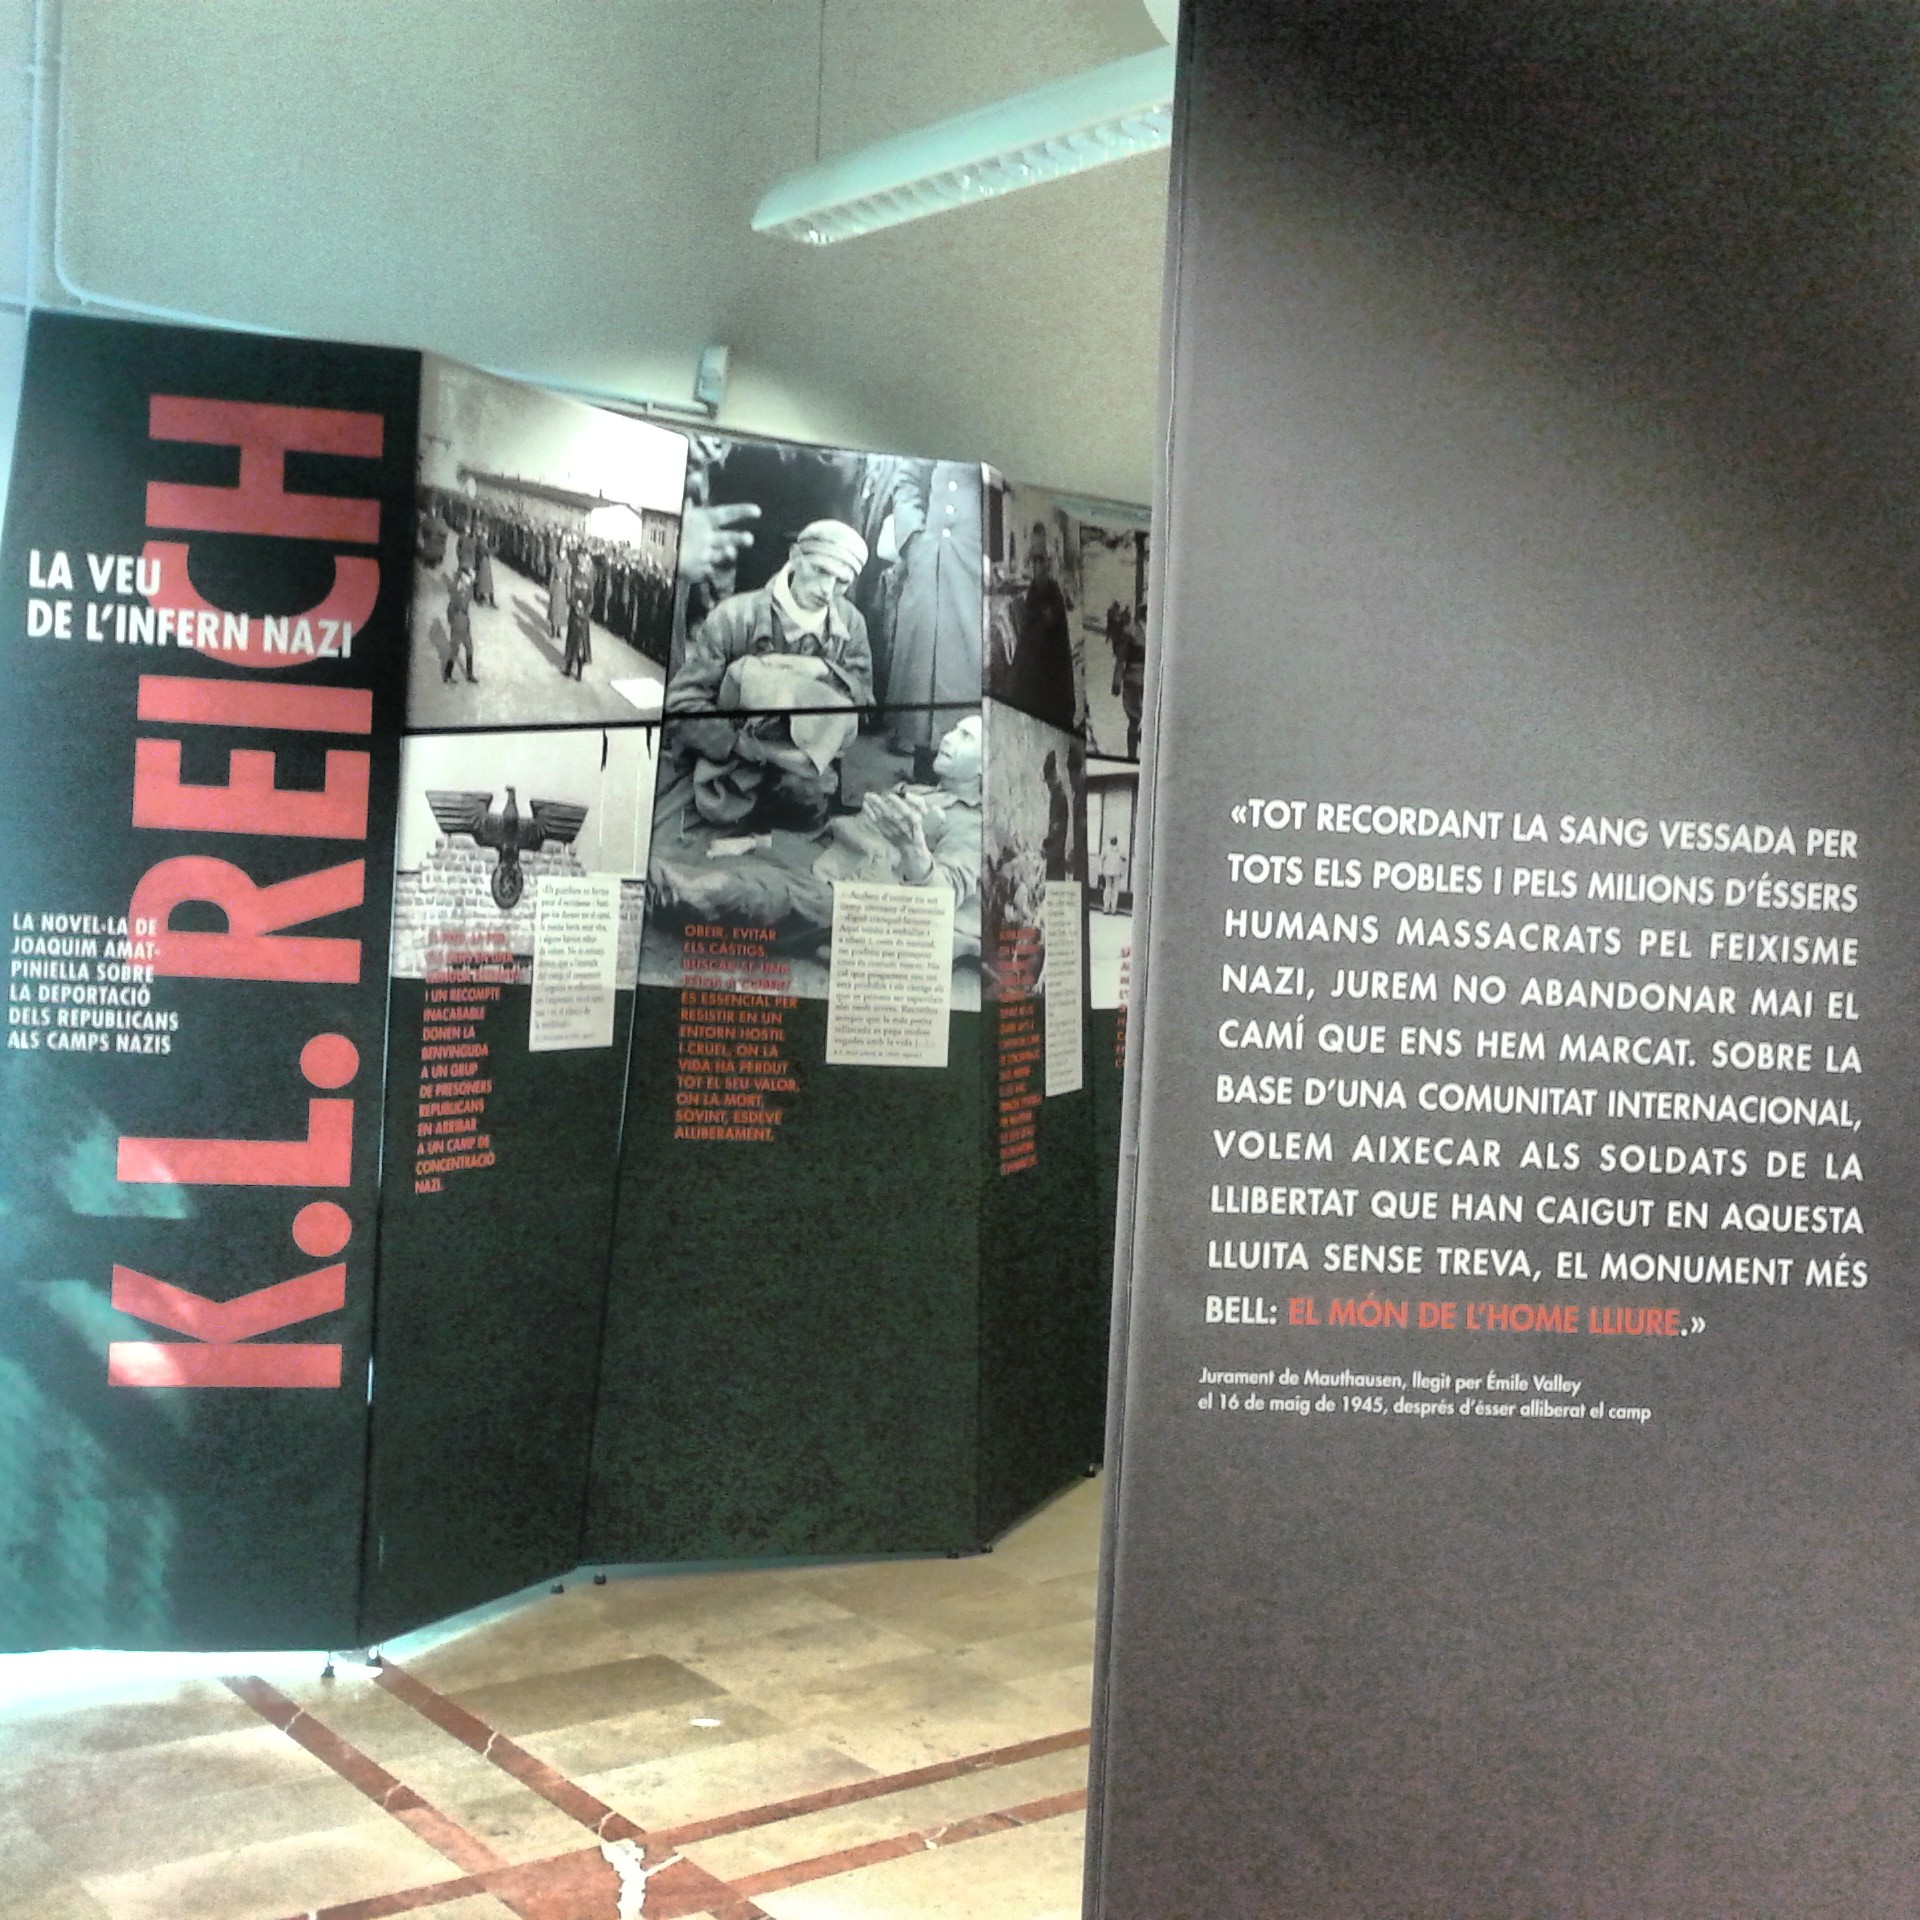 Fins al 18 d’agost es pot visitar a Cornellà de Llobregat l’exposició “K.L. Reich: la veu de l’infern nazi”